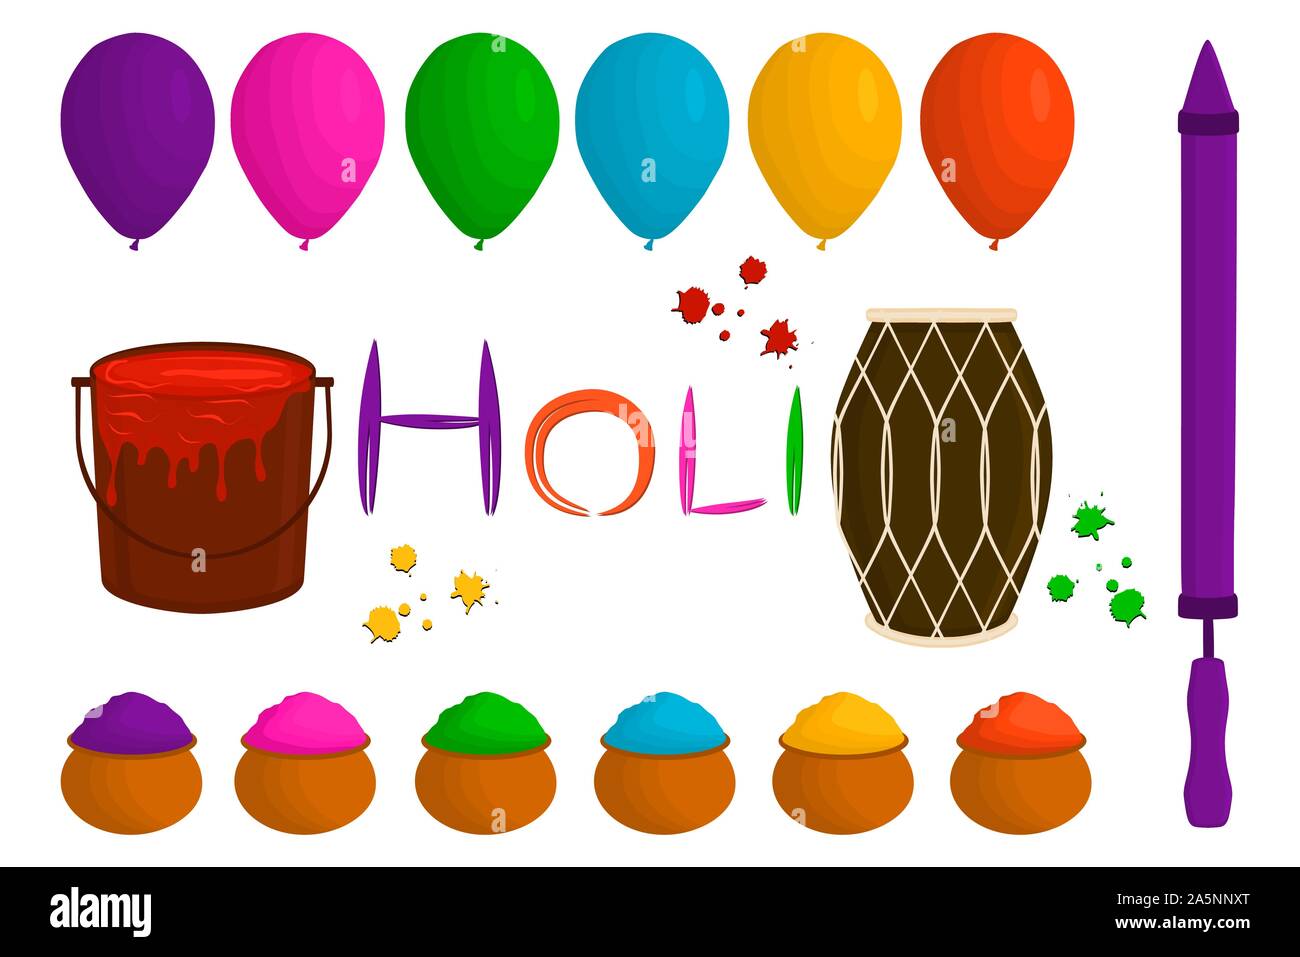 Abbildung auf Thema große verschiedene bunte Luftballons, Pulver für Holi. Ballon Muster bestehend aus Sammlung Zubehör Pulver fe Holi Stock Vektor